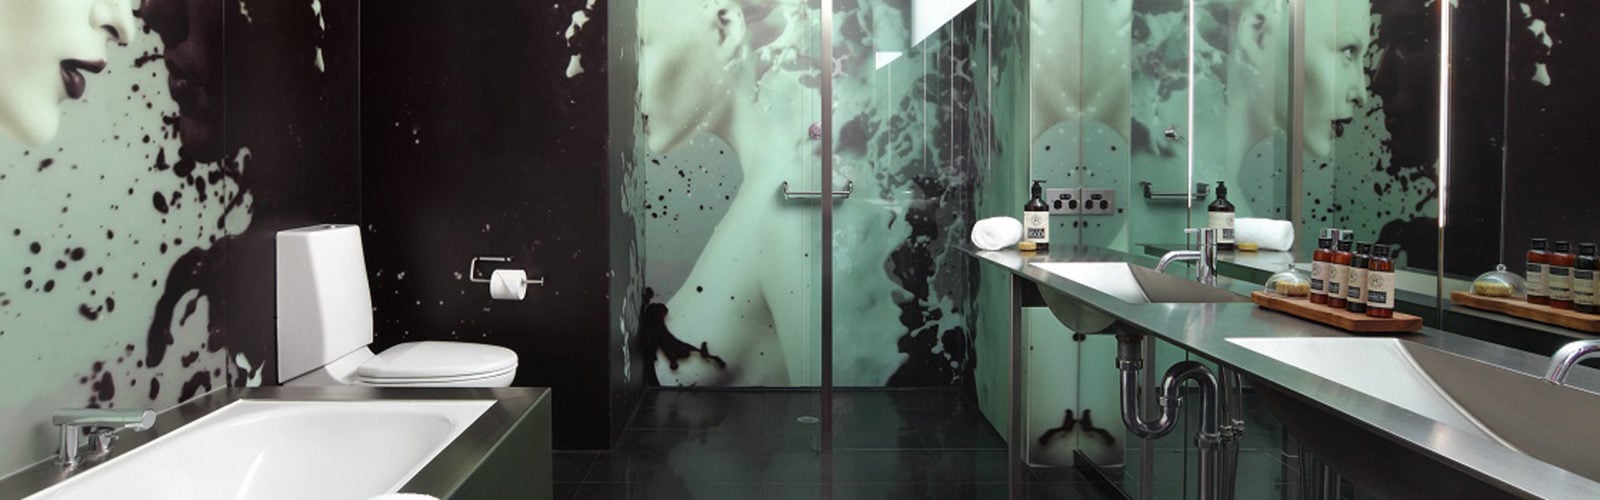 adelphi-hotel-bathroom